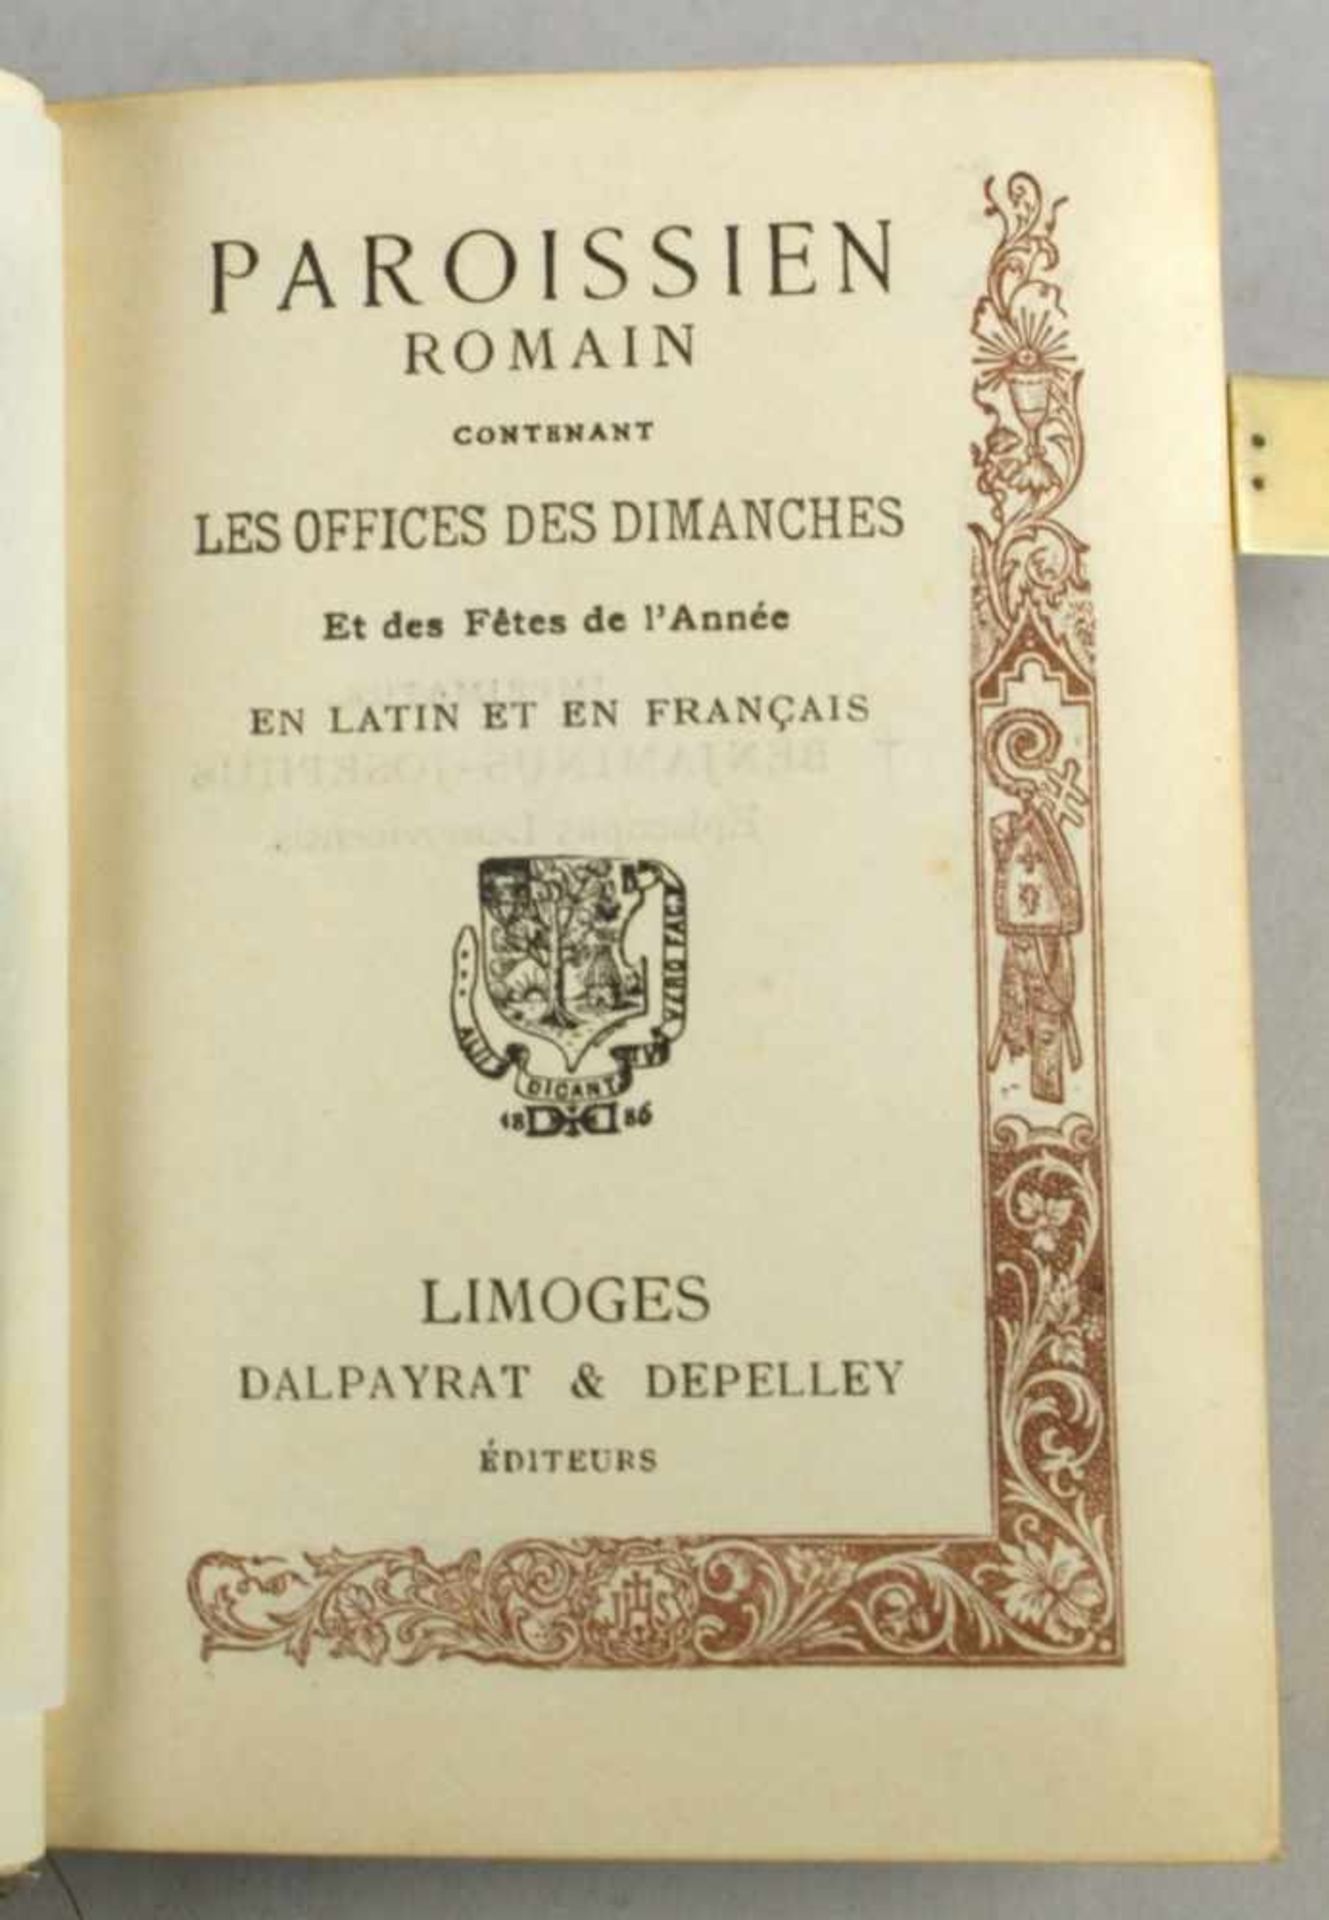 Buch, "Paroissien", Romain contenant les Offices des Dimanches, Limoges, Dalpayrat n&Depelley, - Bild 2 aus 2